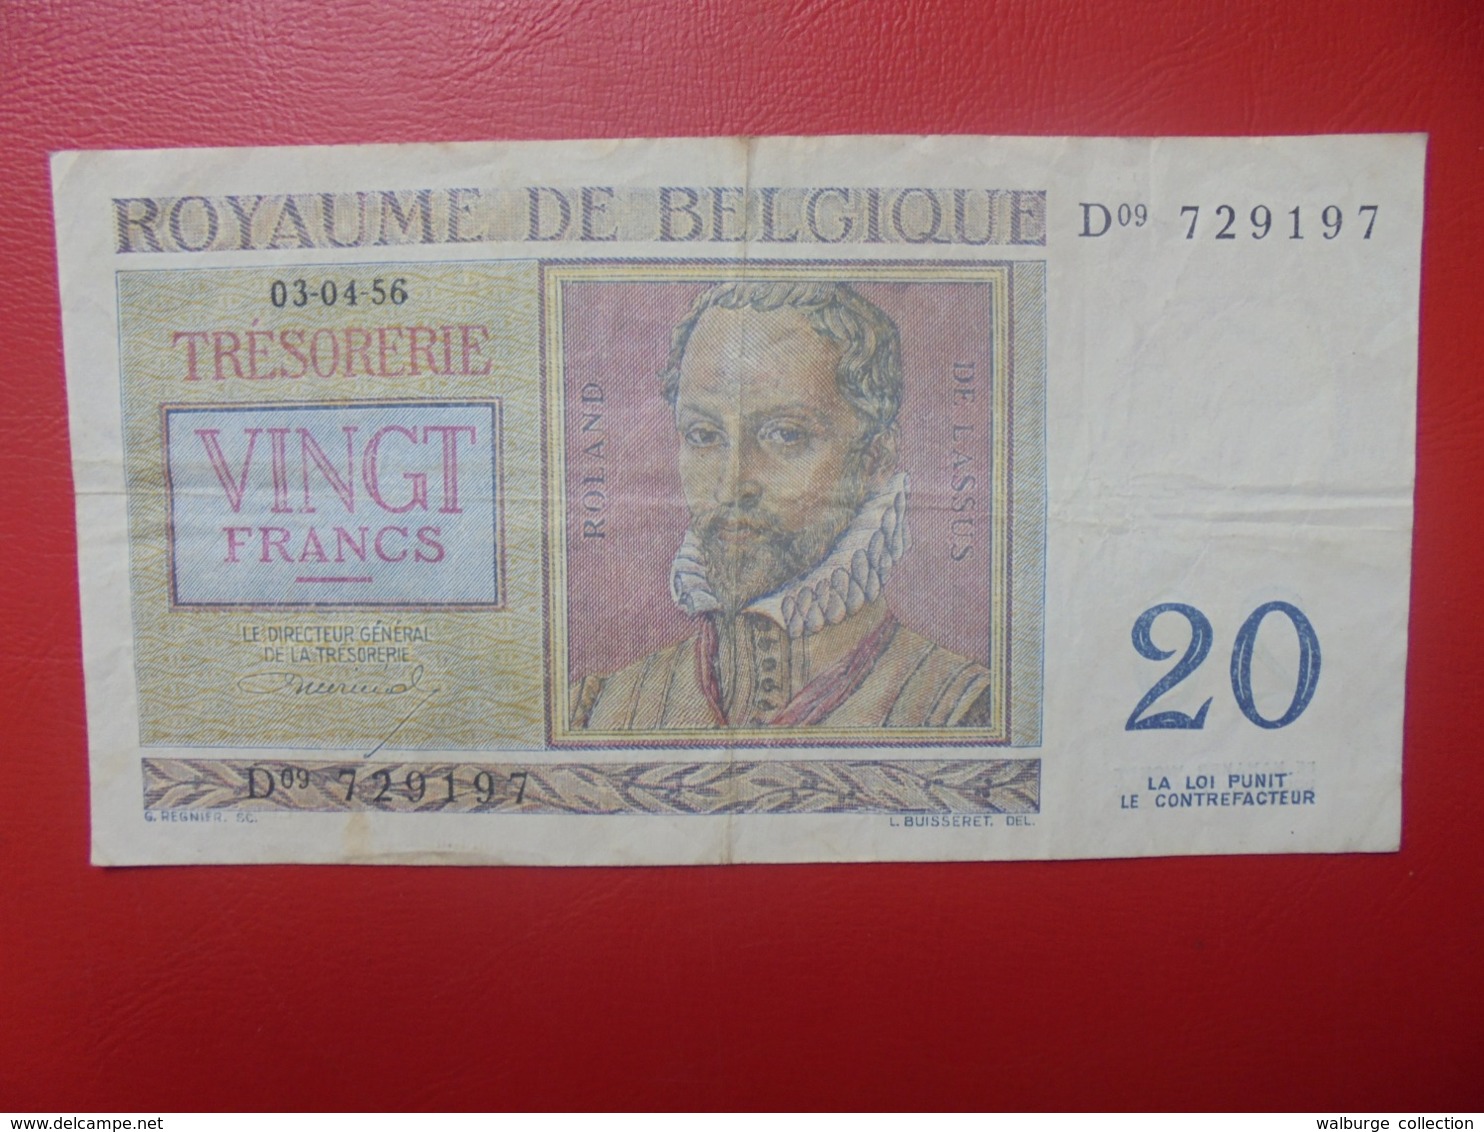 BELGIQUE 20 FRANCS 1956 CIRCULER (B.8) - 20 Francs